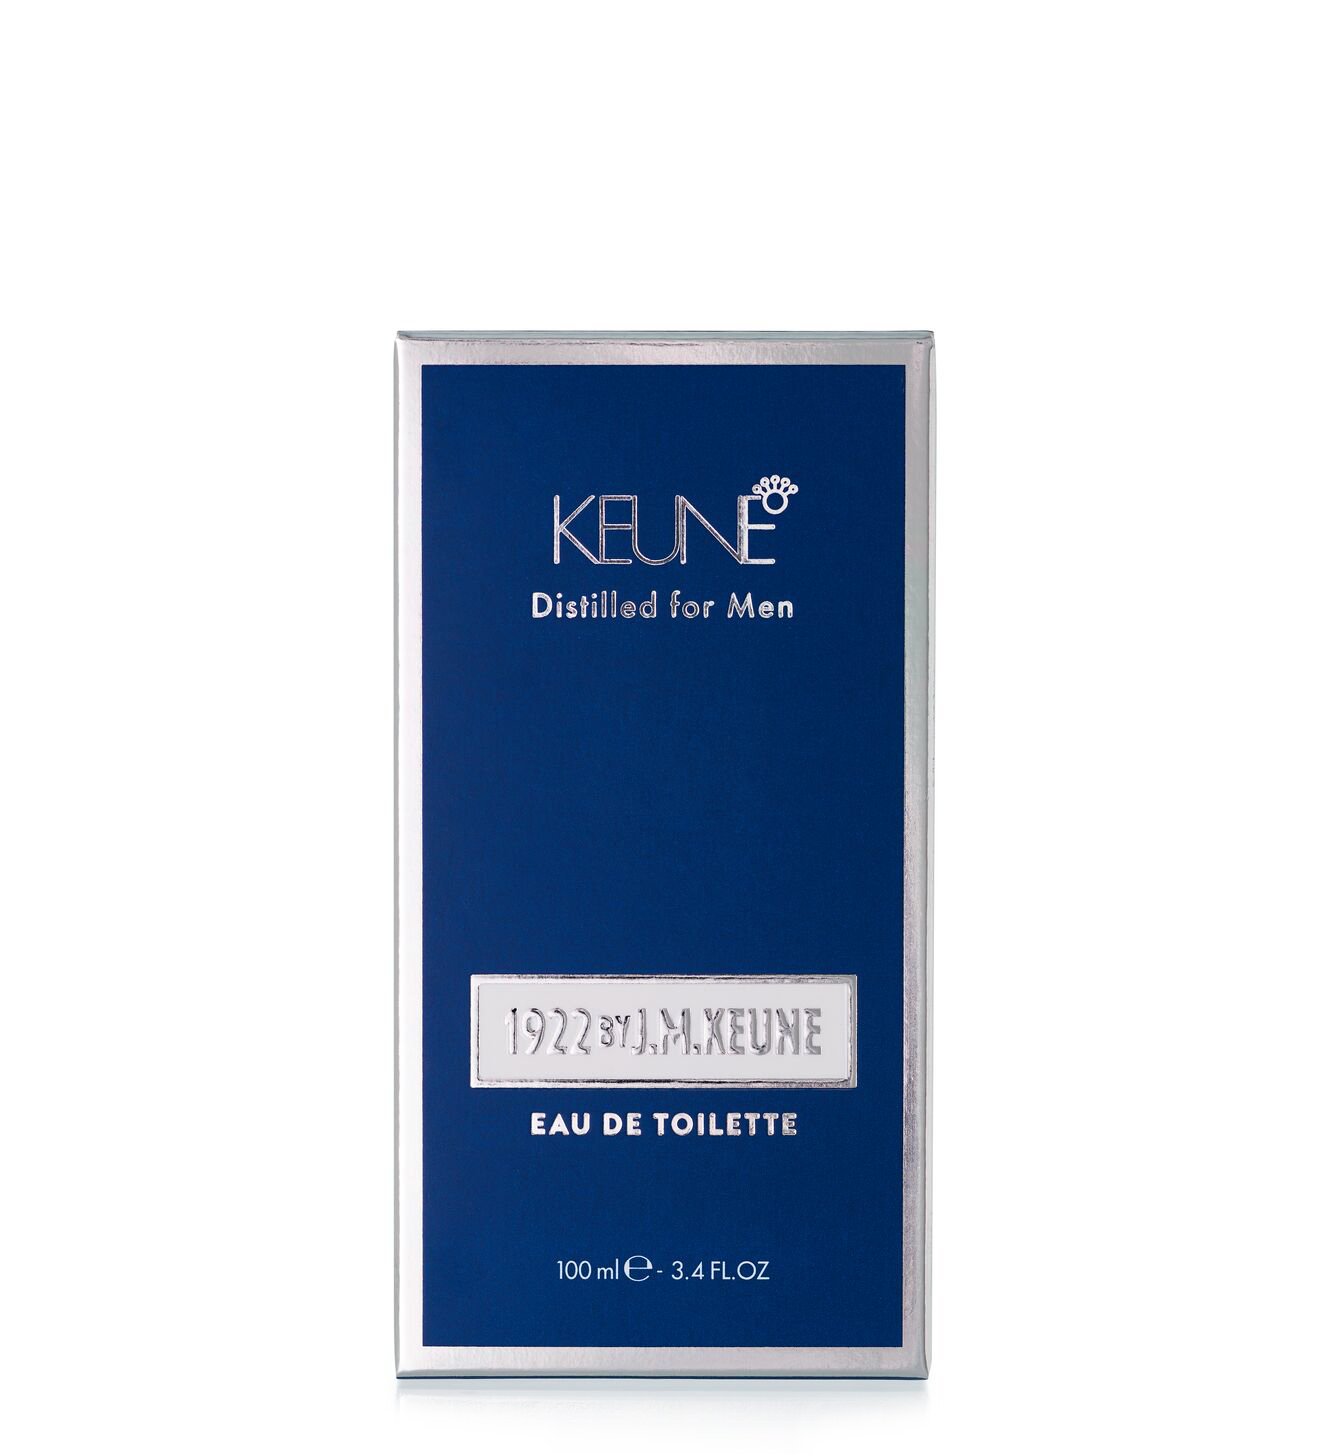 1922 by J.M. Keune présente l'Eau de Toilette, un parfum masculin pour l'homme moderne. Procurez-vous ce parfum pour hommes sur keune.ch.